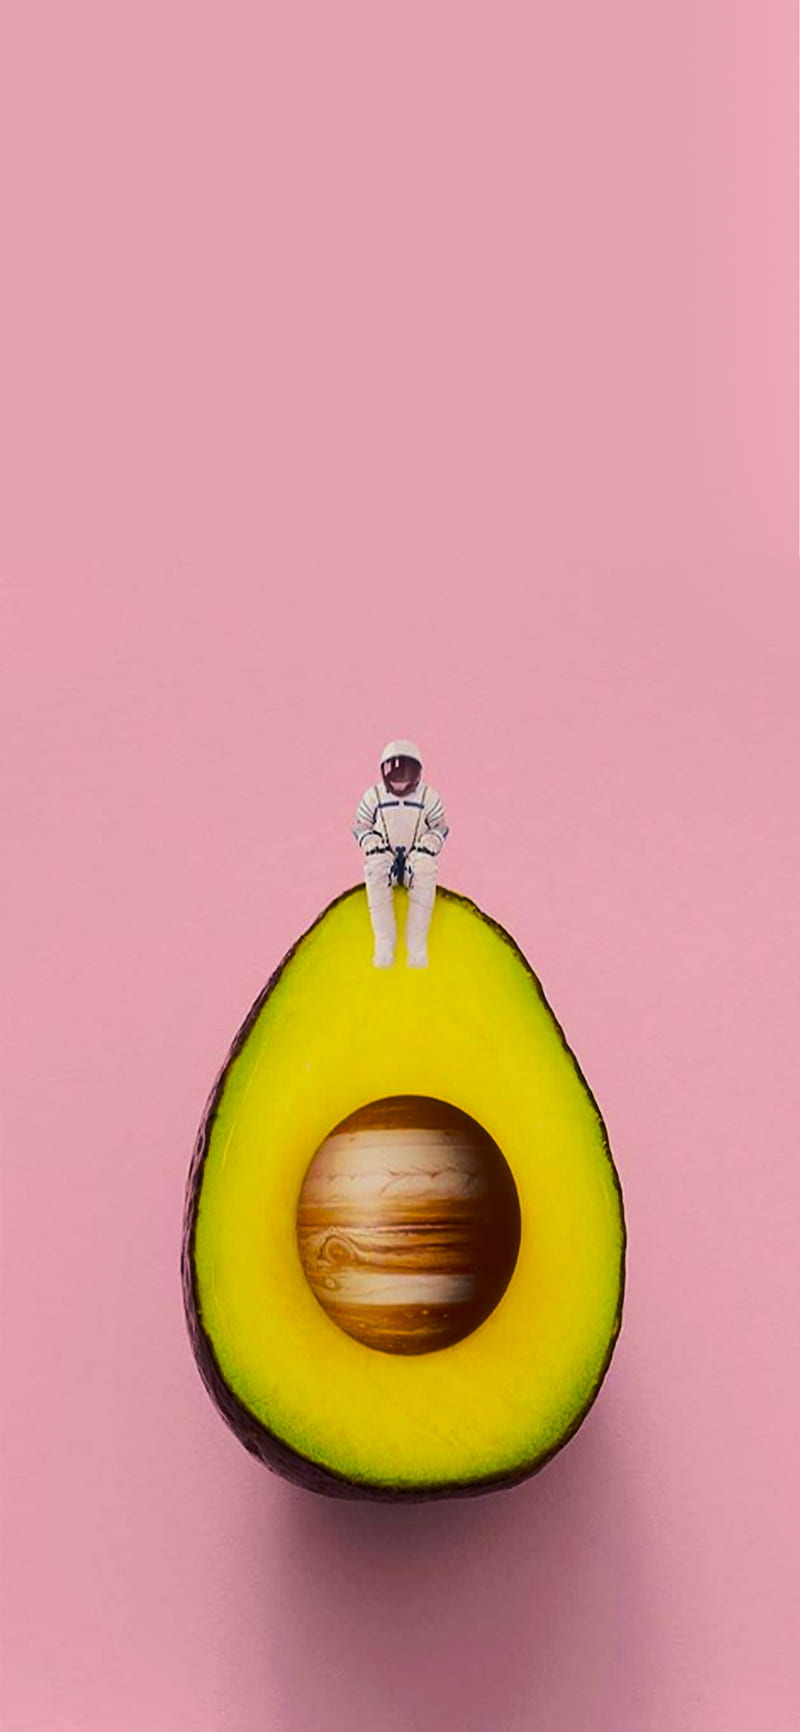 An astronaut on an avocado. - Avocado